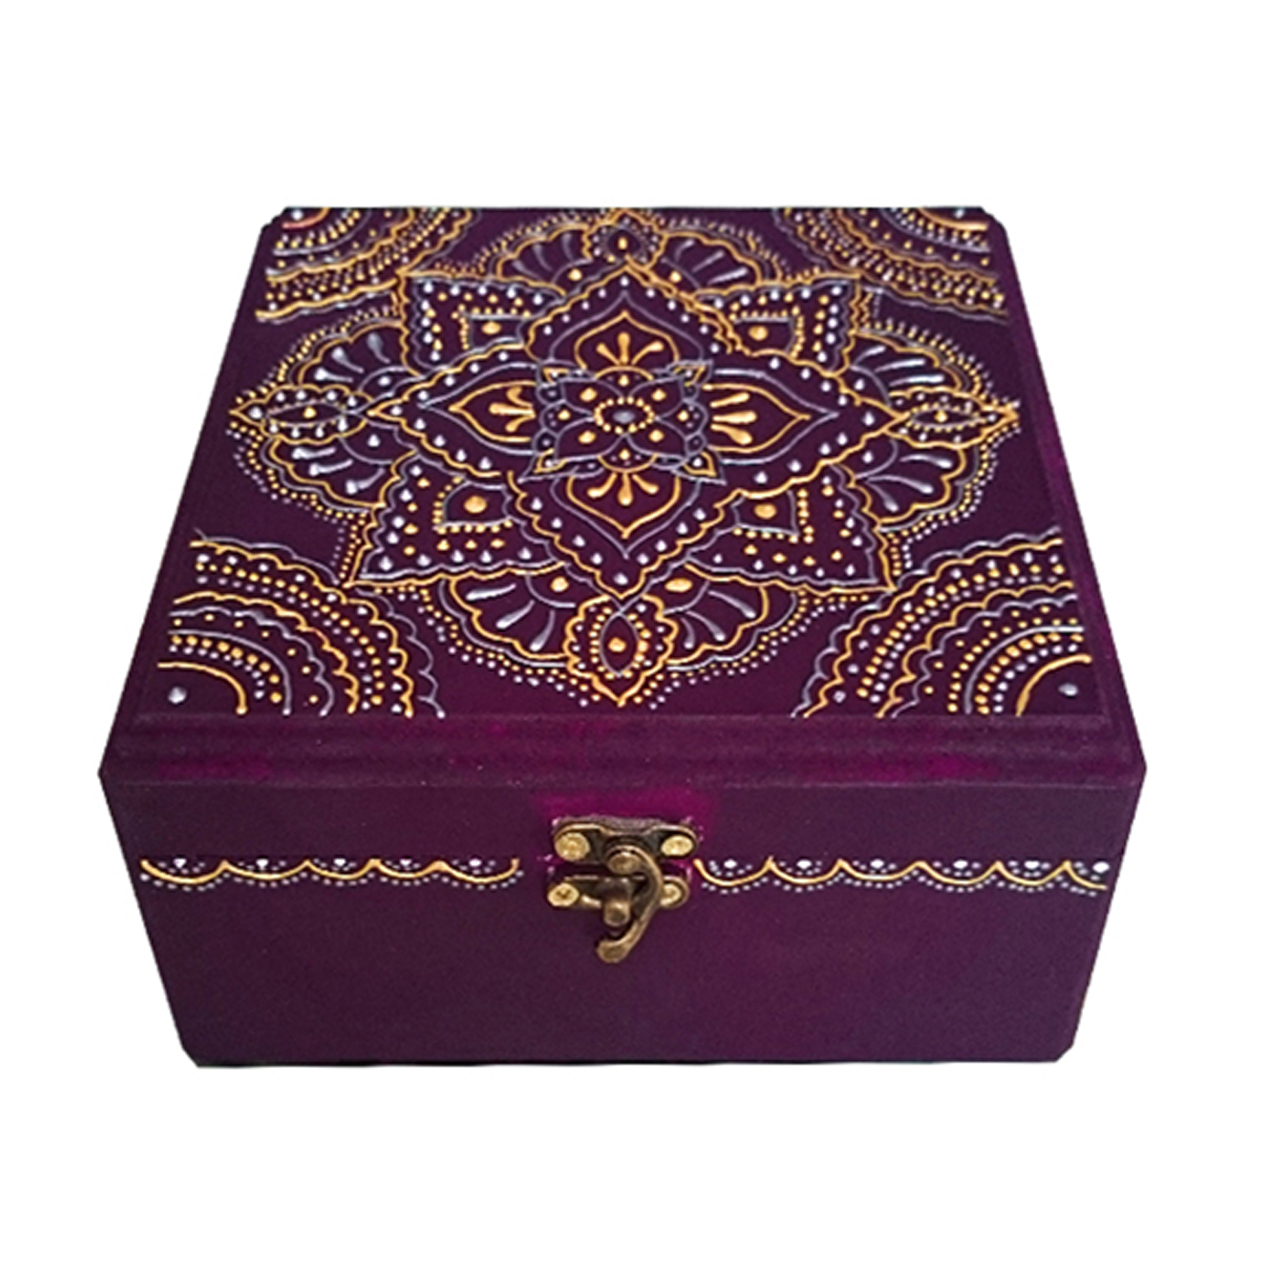 جعبه جواهرات چوبی یک هدیه خوب کد 1382703